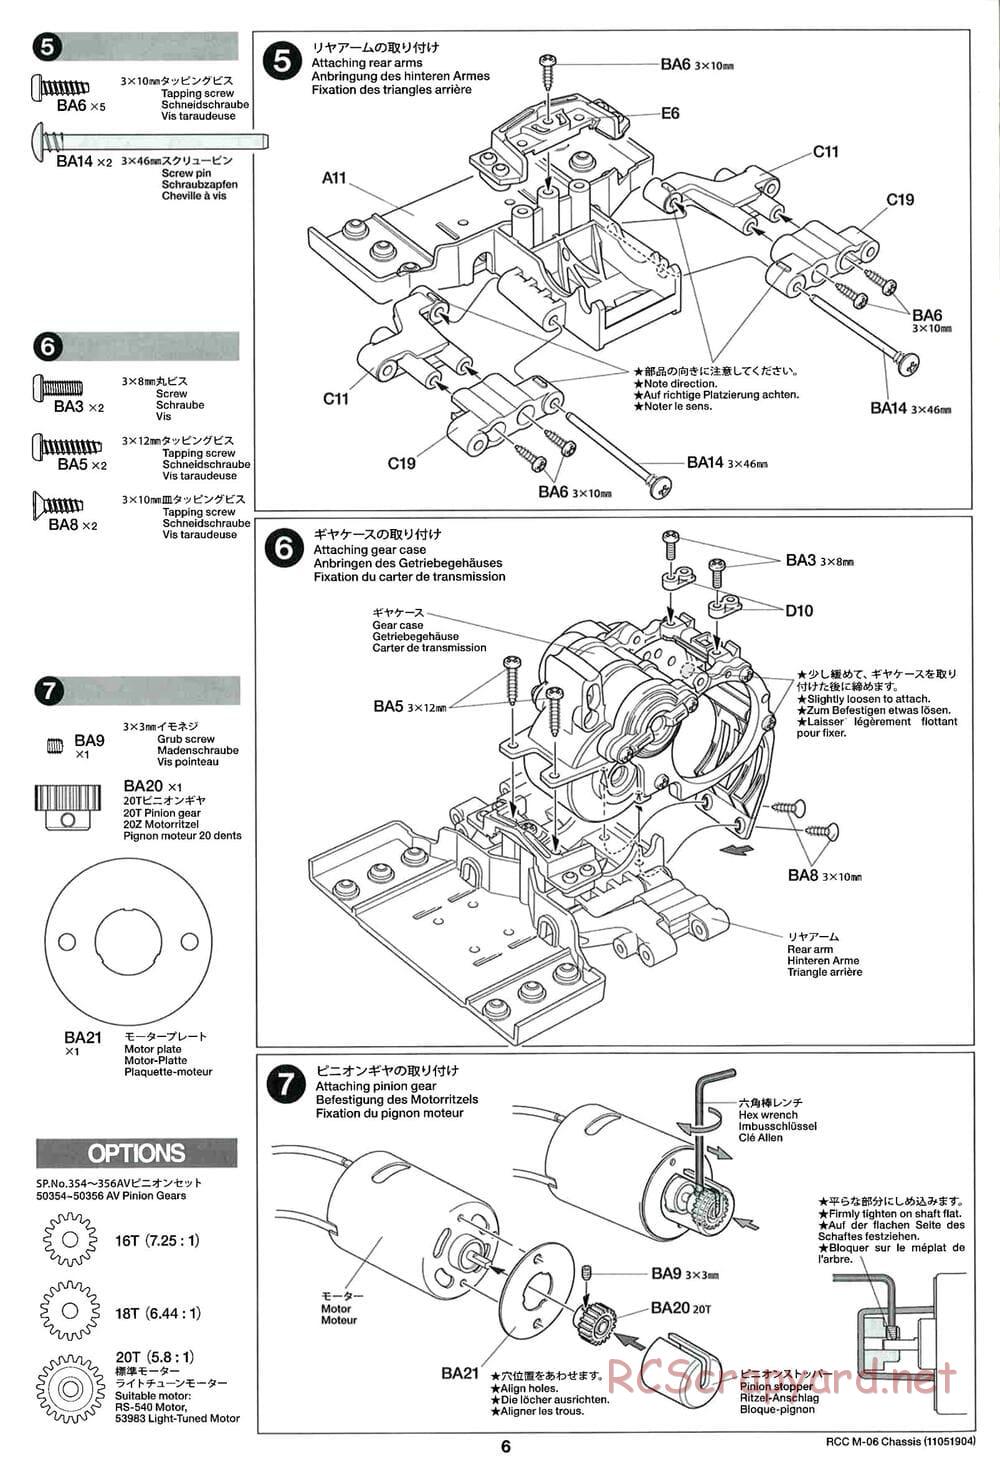 Tamiya - M-06 Chassis - Manual - Page 6